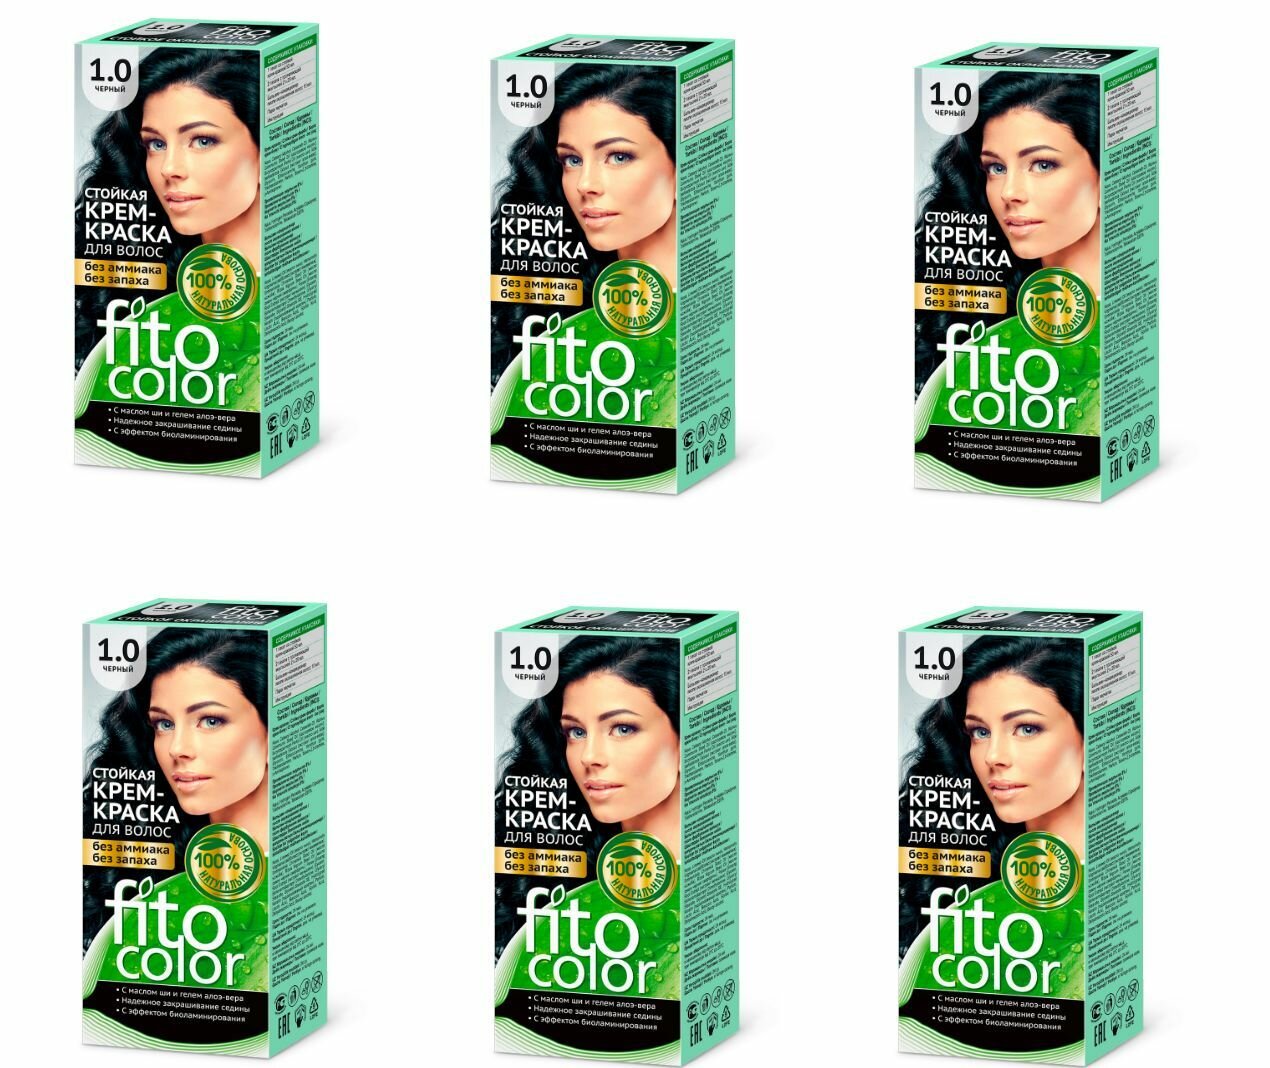 Fito Косметик Крем-краска для волос Фитоколор, черный тон 1.0, 115 мл - 6 шт